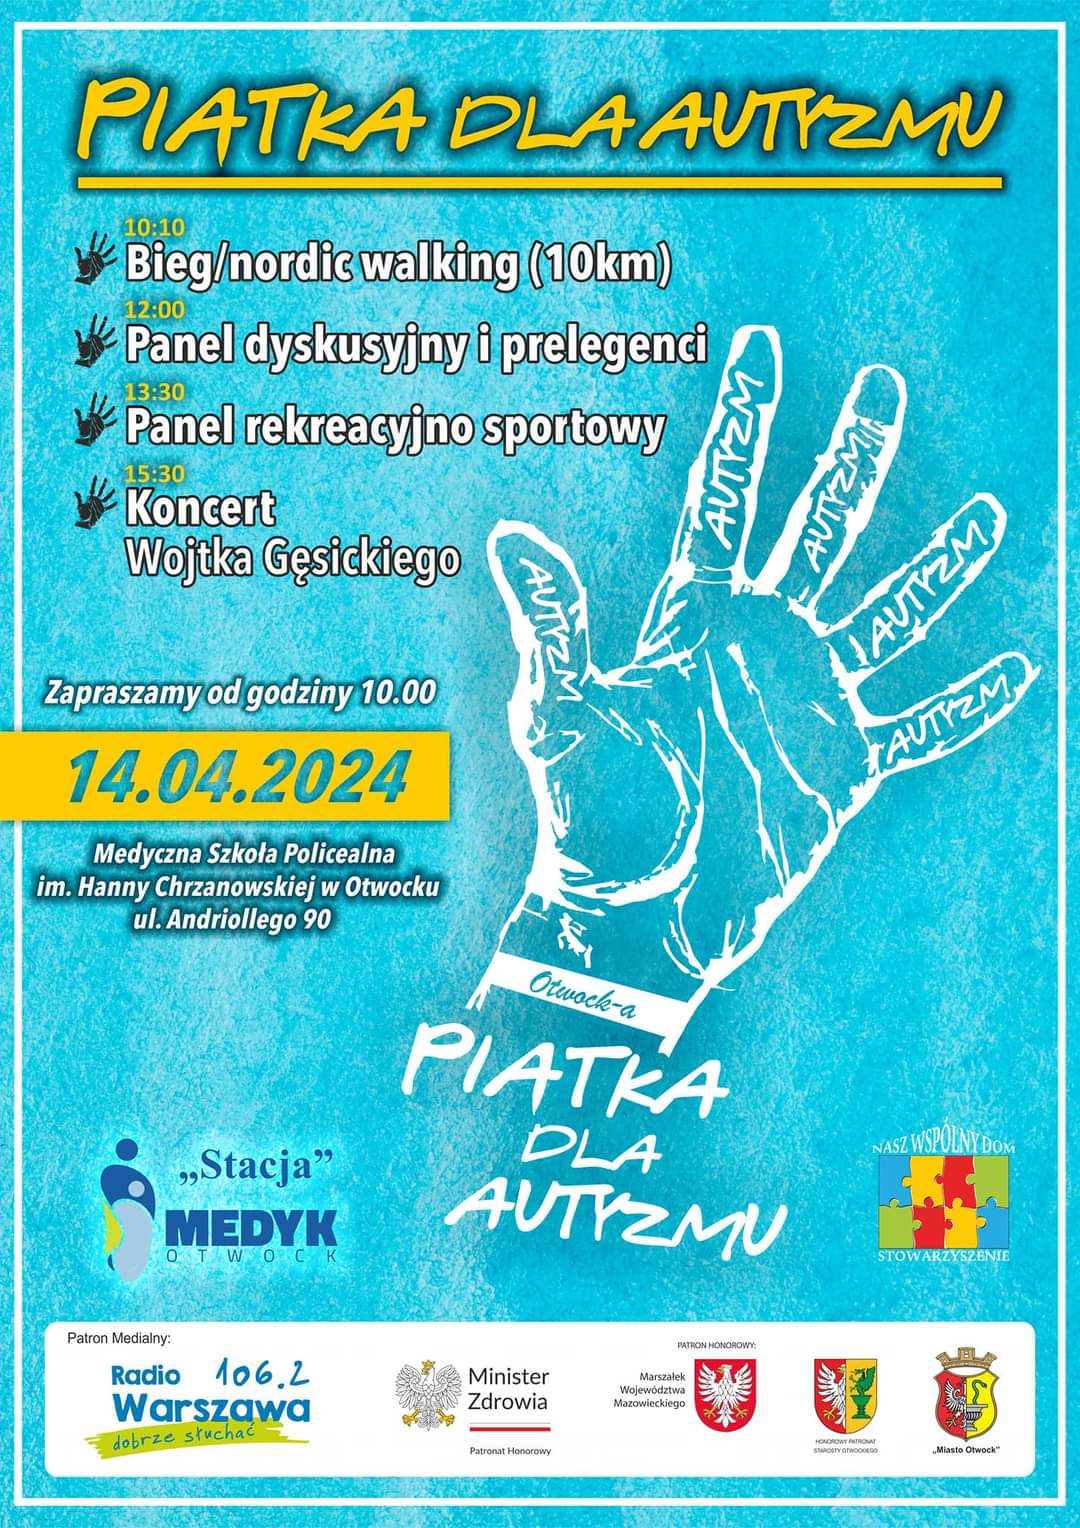 Piątka dla autyzmu - wydarzenie 14 kwietnia w Otwocku.